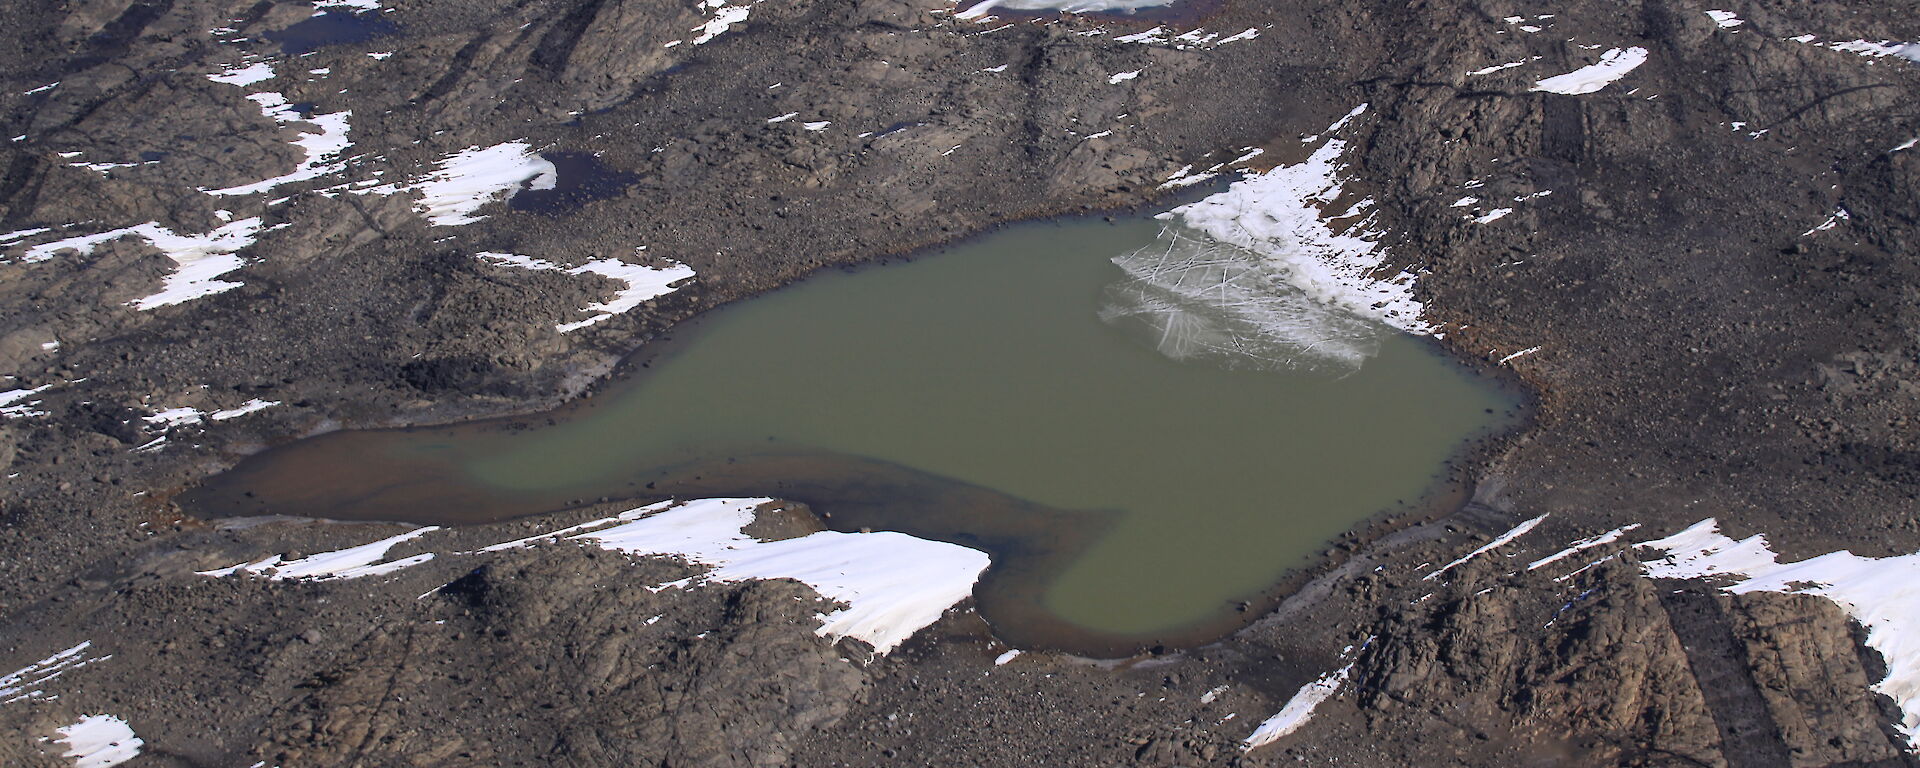 Aerial view of Organic Lake in Antarctica